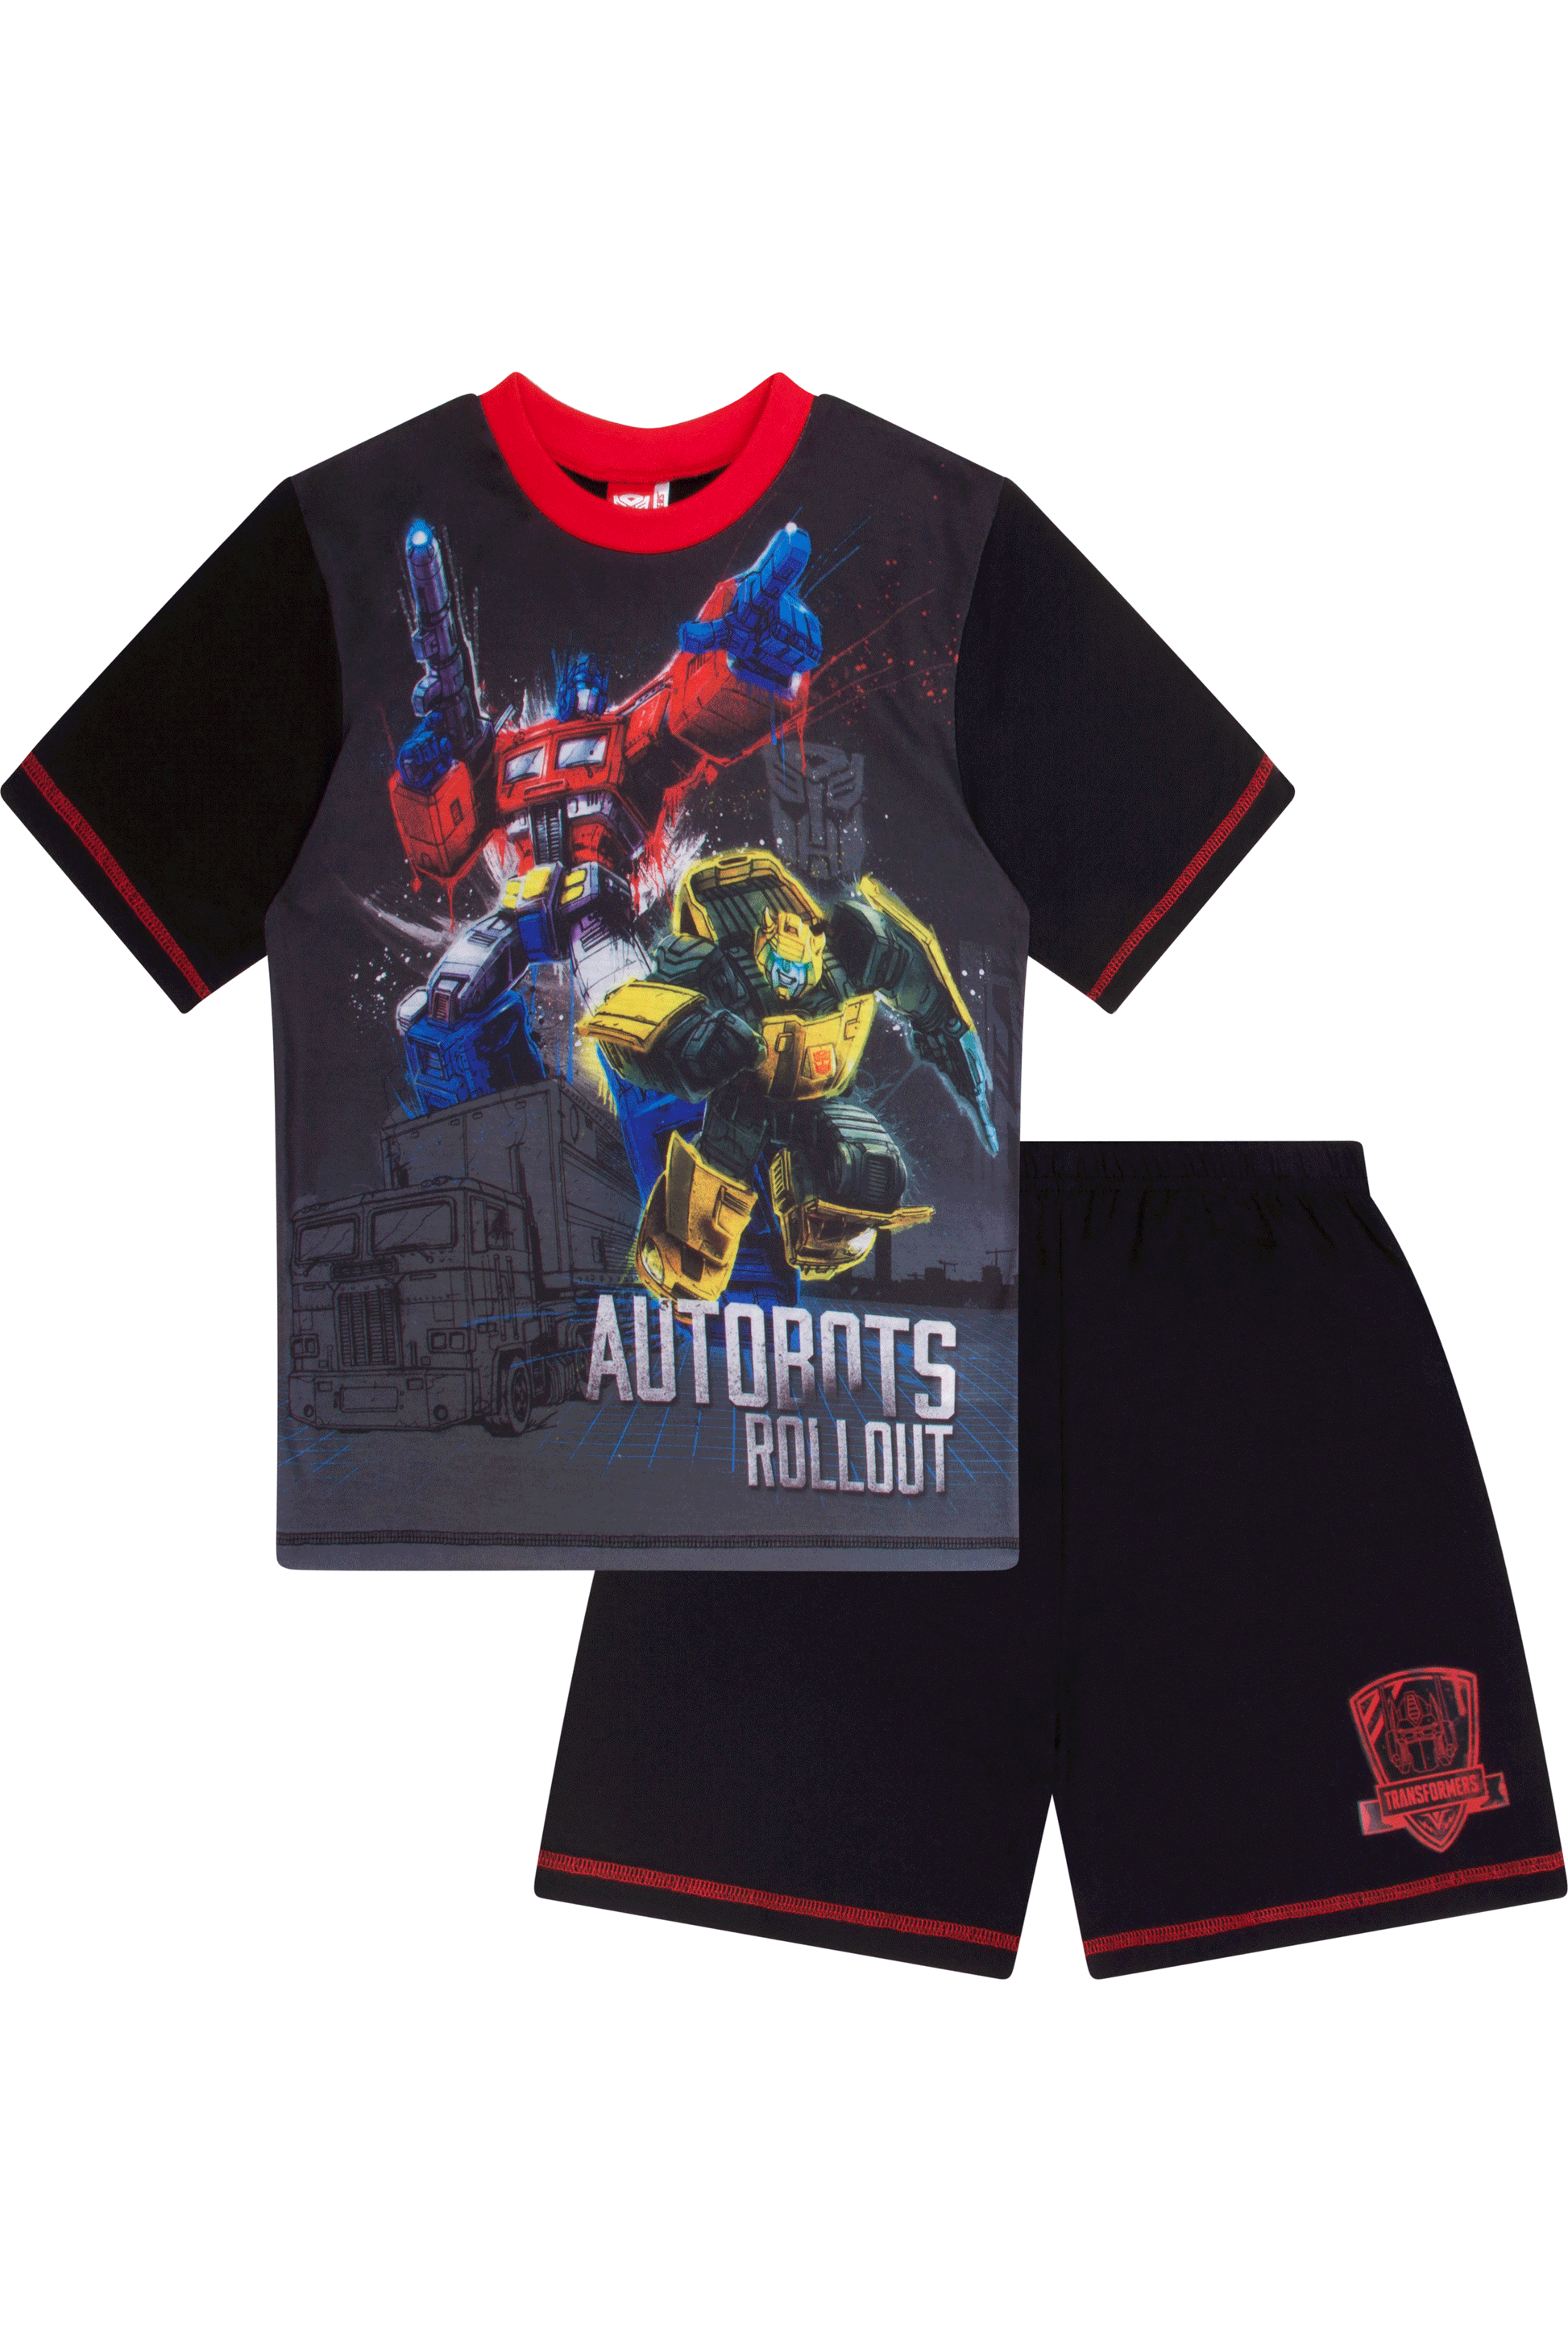 Transformers Optimus Prime Short Pyjamas - Pyjamas.com